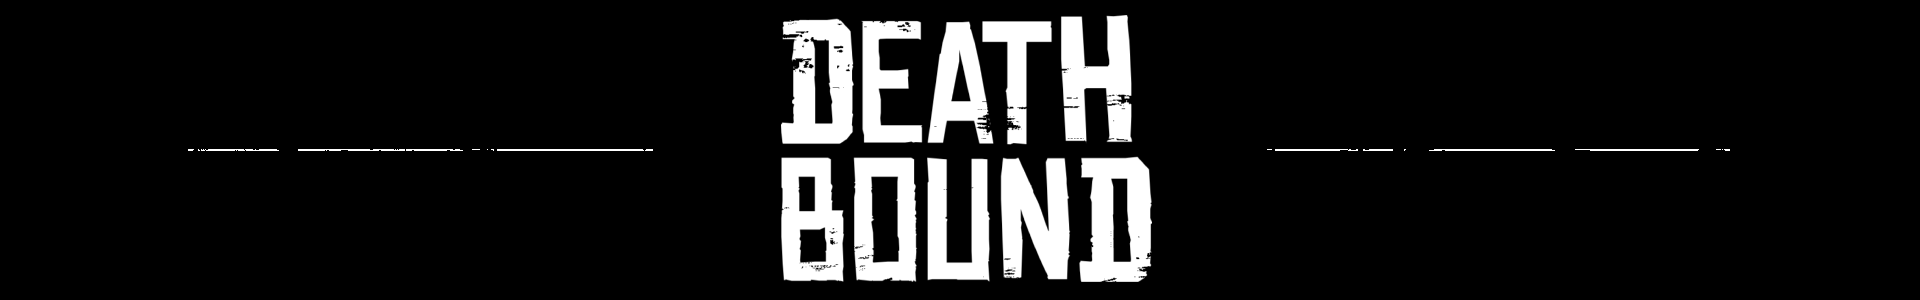 DEATH BOUND